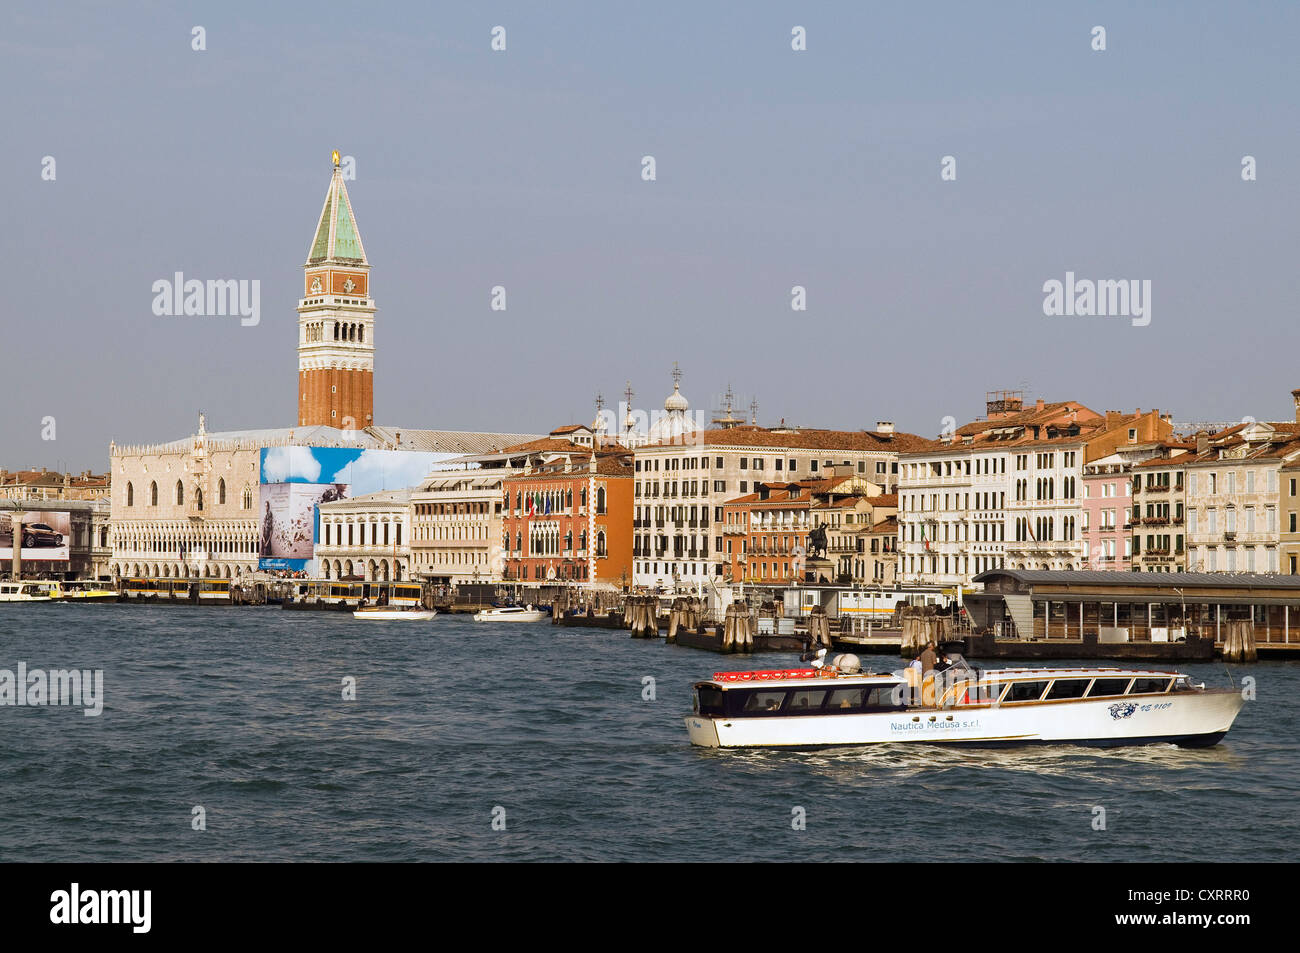 Acqua i taxi e i traghetti nel porto di Venezia, con il Campanile di San Marco e il Palazzo Ducale nella parte posteriore, Venezia, Veneto, Italia Foto Stock